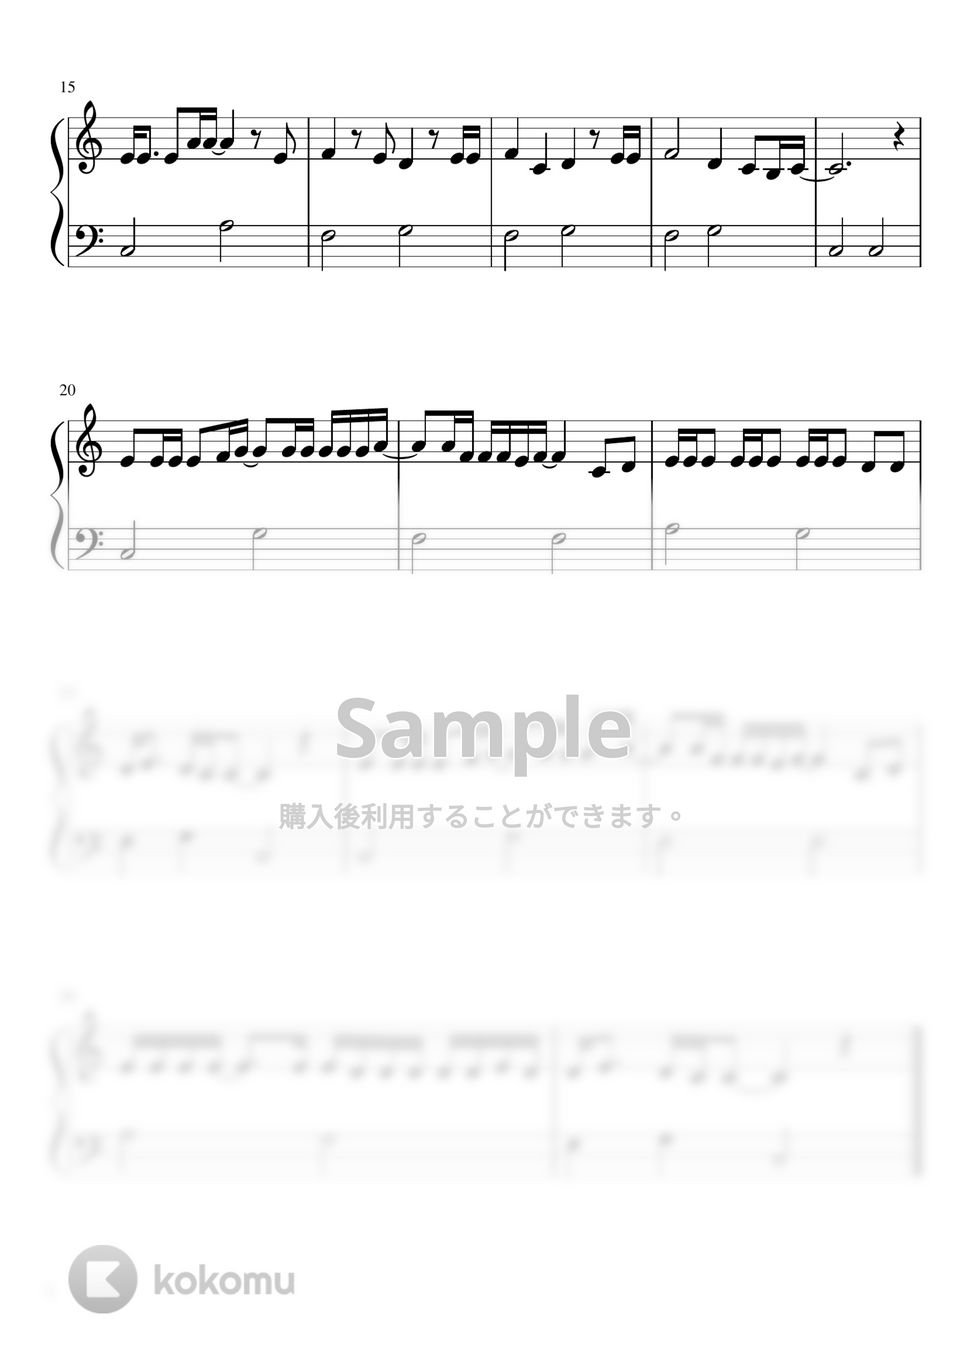 ピクミン - 愛のうた (ハ長調 / 簡単ピアノ / ストロベリーフラワー) by さく山P